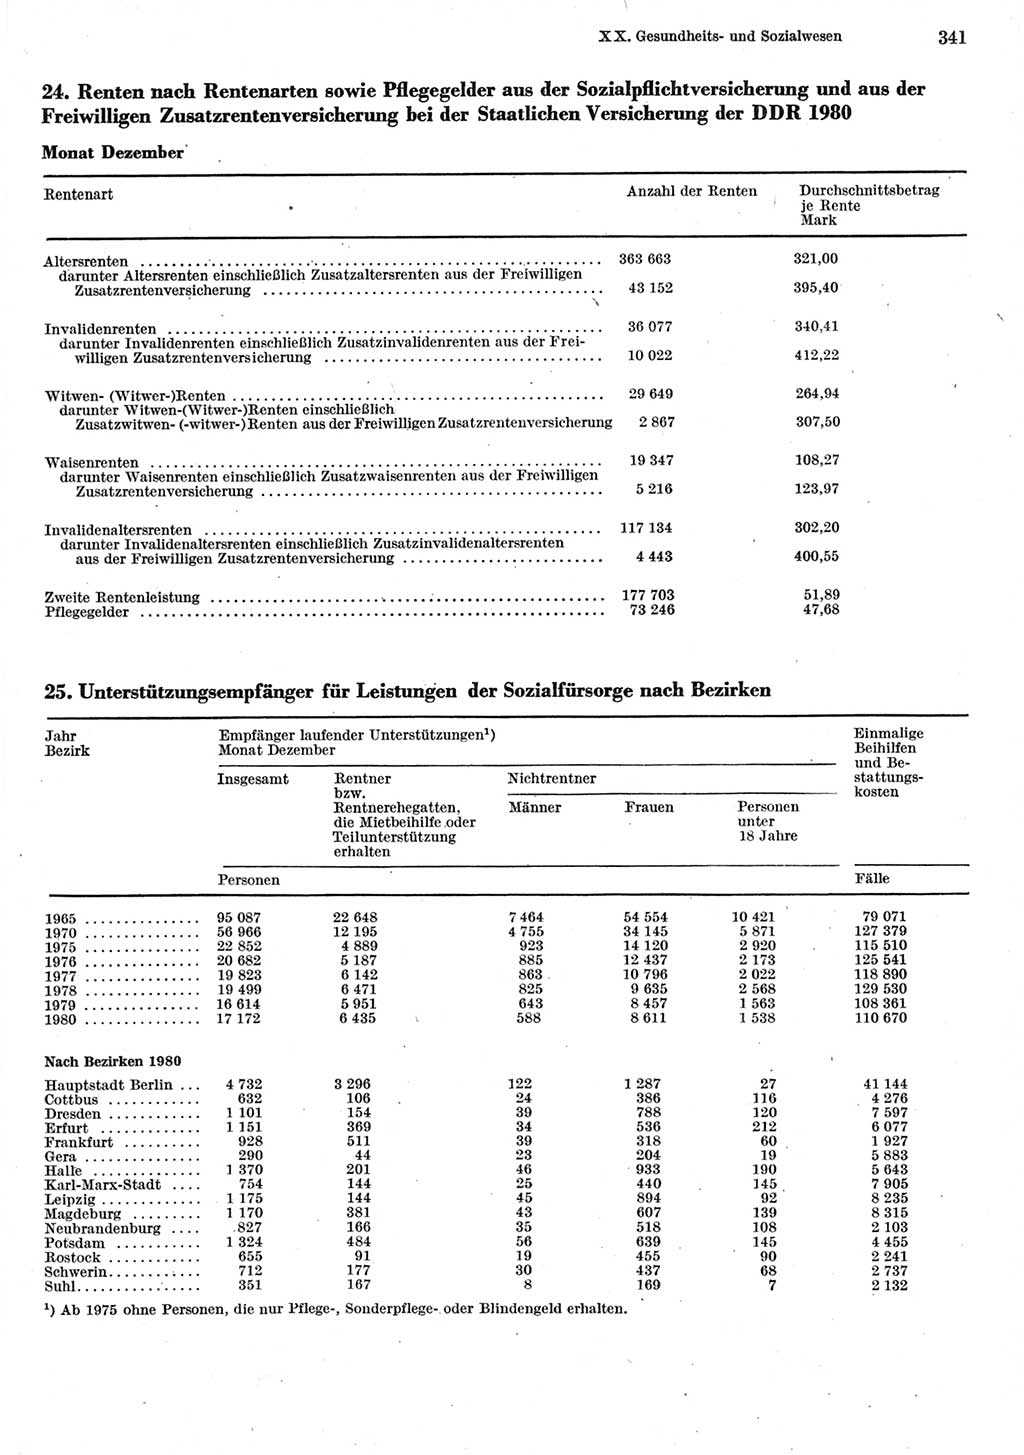 Statistisches Jahrbuch der Deutschen Demokratischen Republik (DDR) 1981, Seite 341 (Stat. Jb. DDR 1981, S. 341)